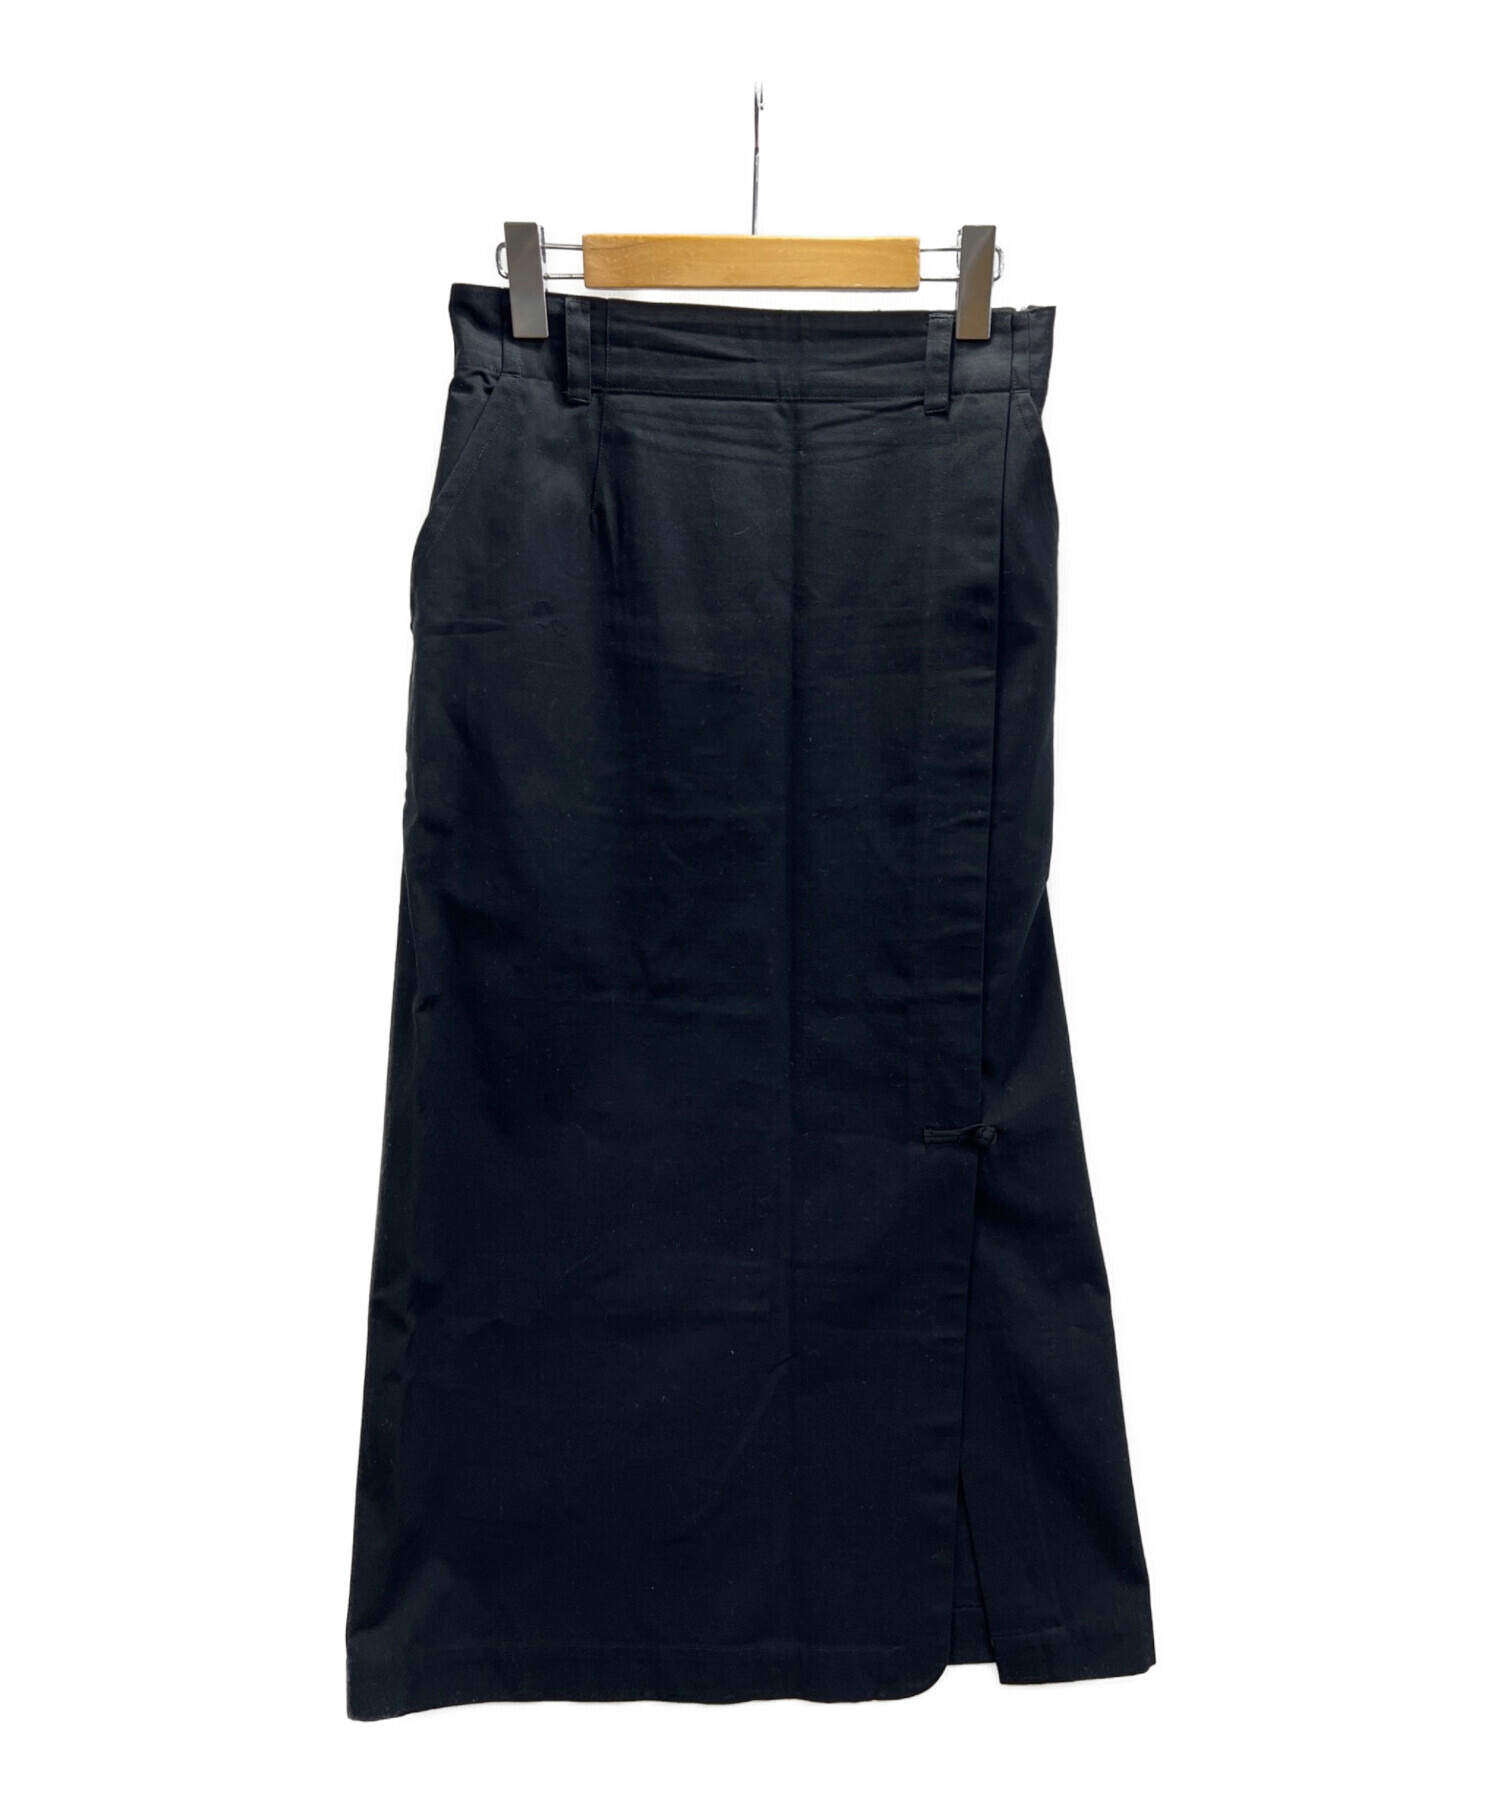 HAI SPORTING GEAR (ハイスポーティングギア) ロングスカート ブラック サイズ:M